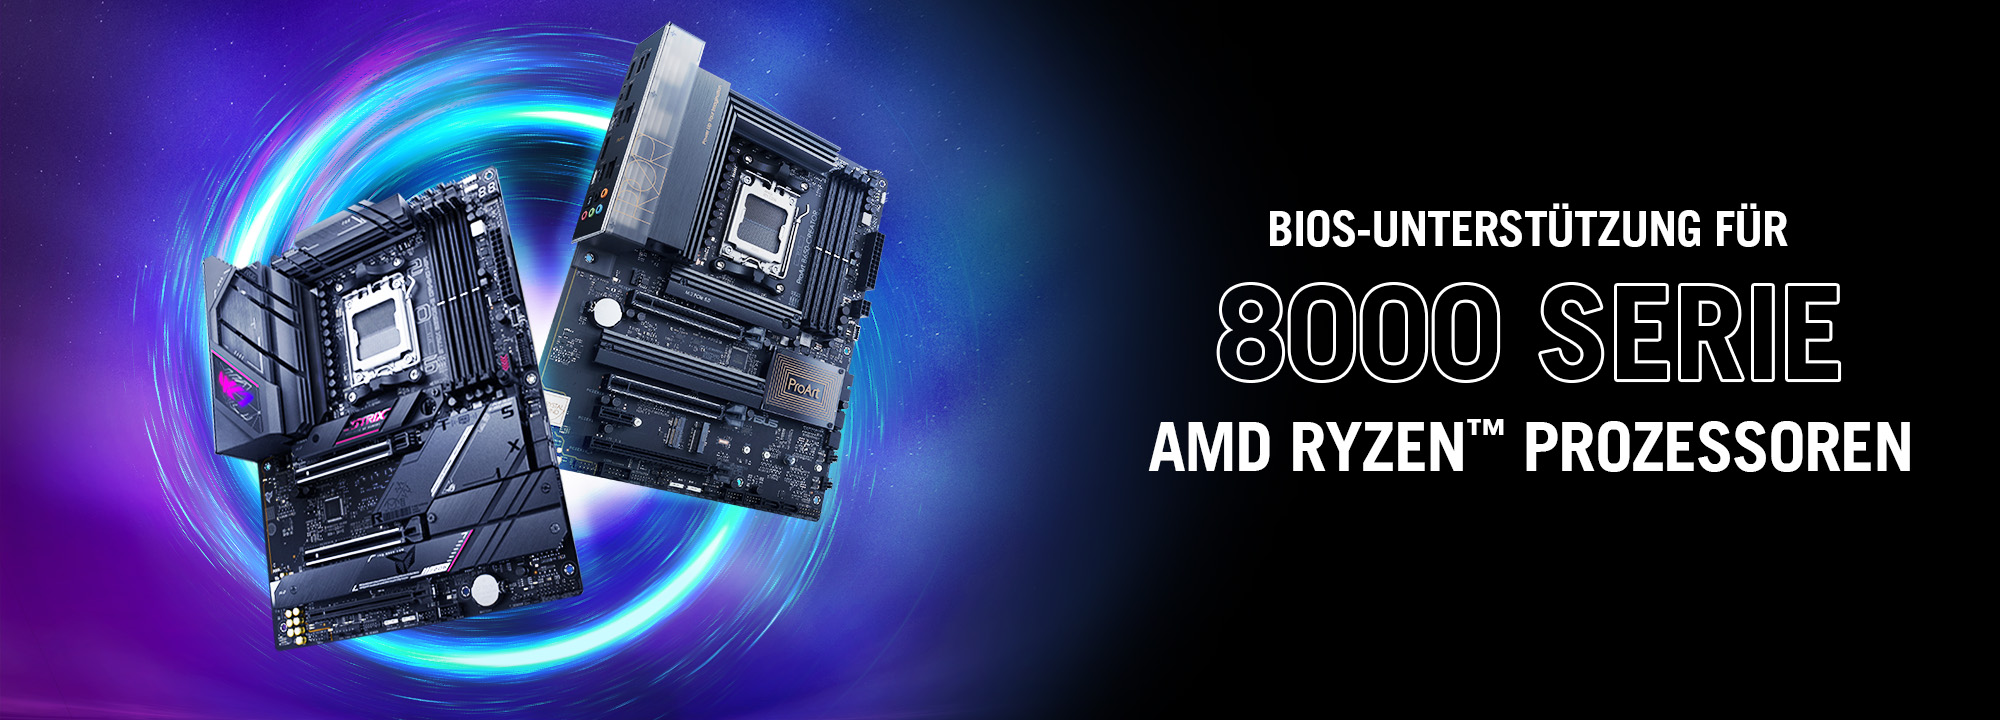 Zwei B650 Motherboards mit BIOS Ready für AMD Ryzen™ Prozessoren der Serie 8000